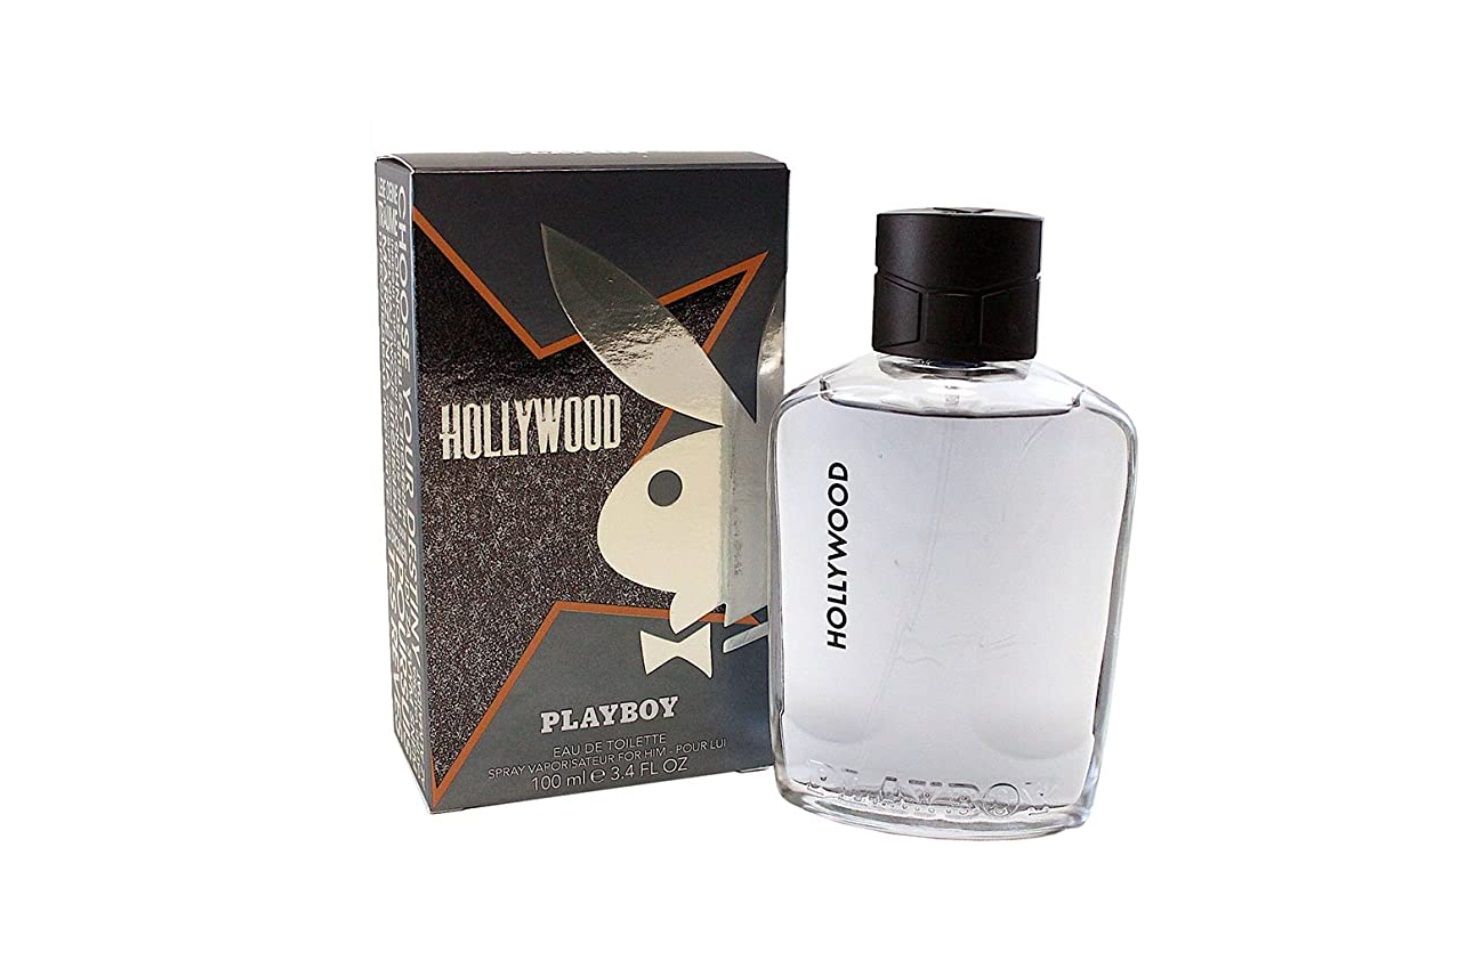 ¡Chollo! Colonia Playboy Hollywood por sólo 2,99€